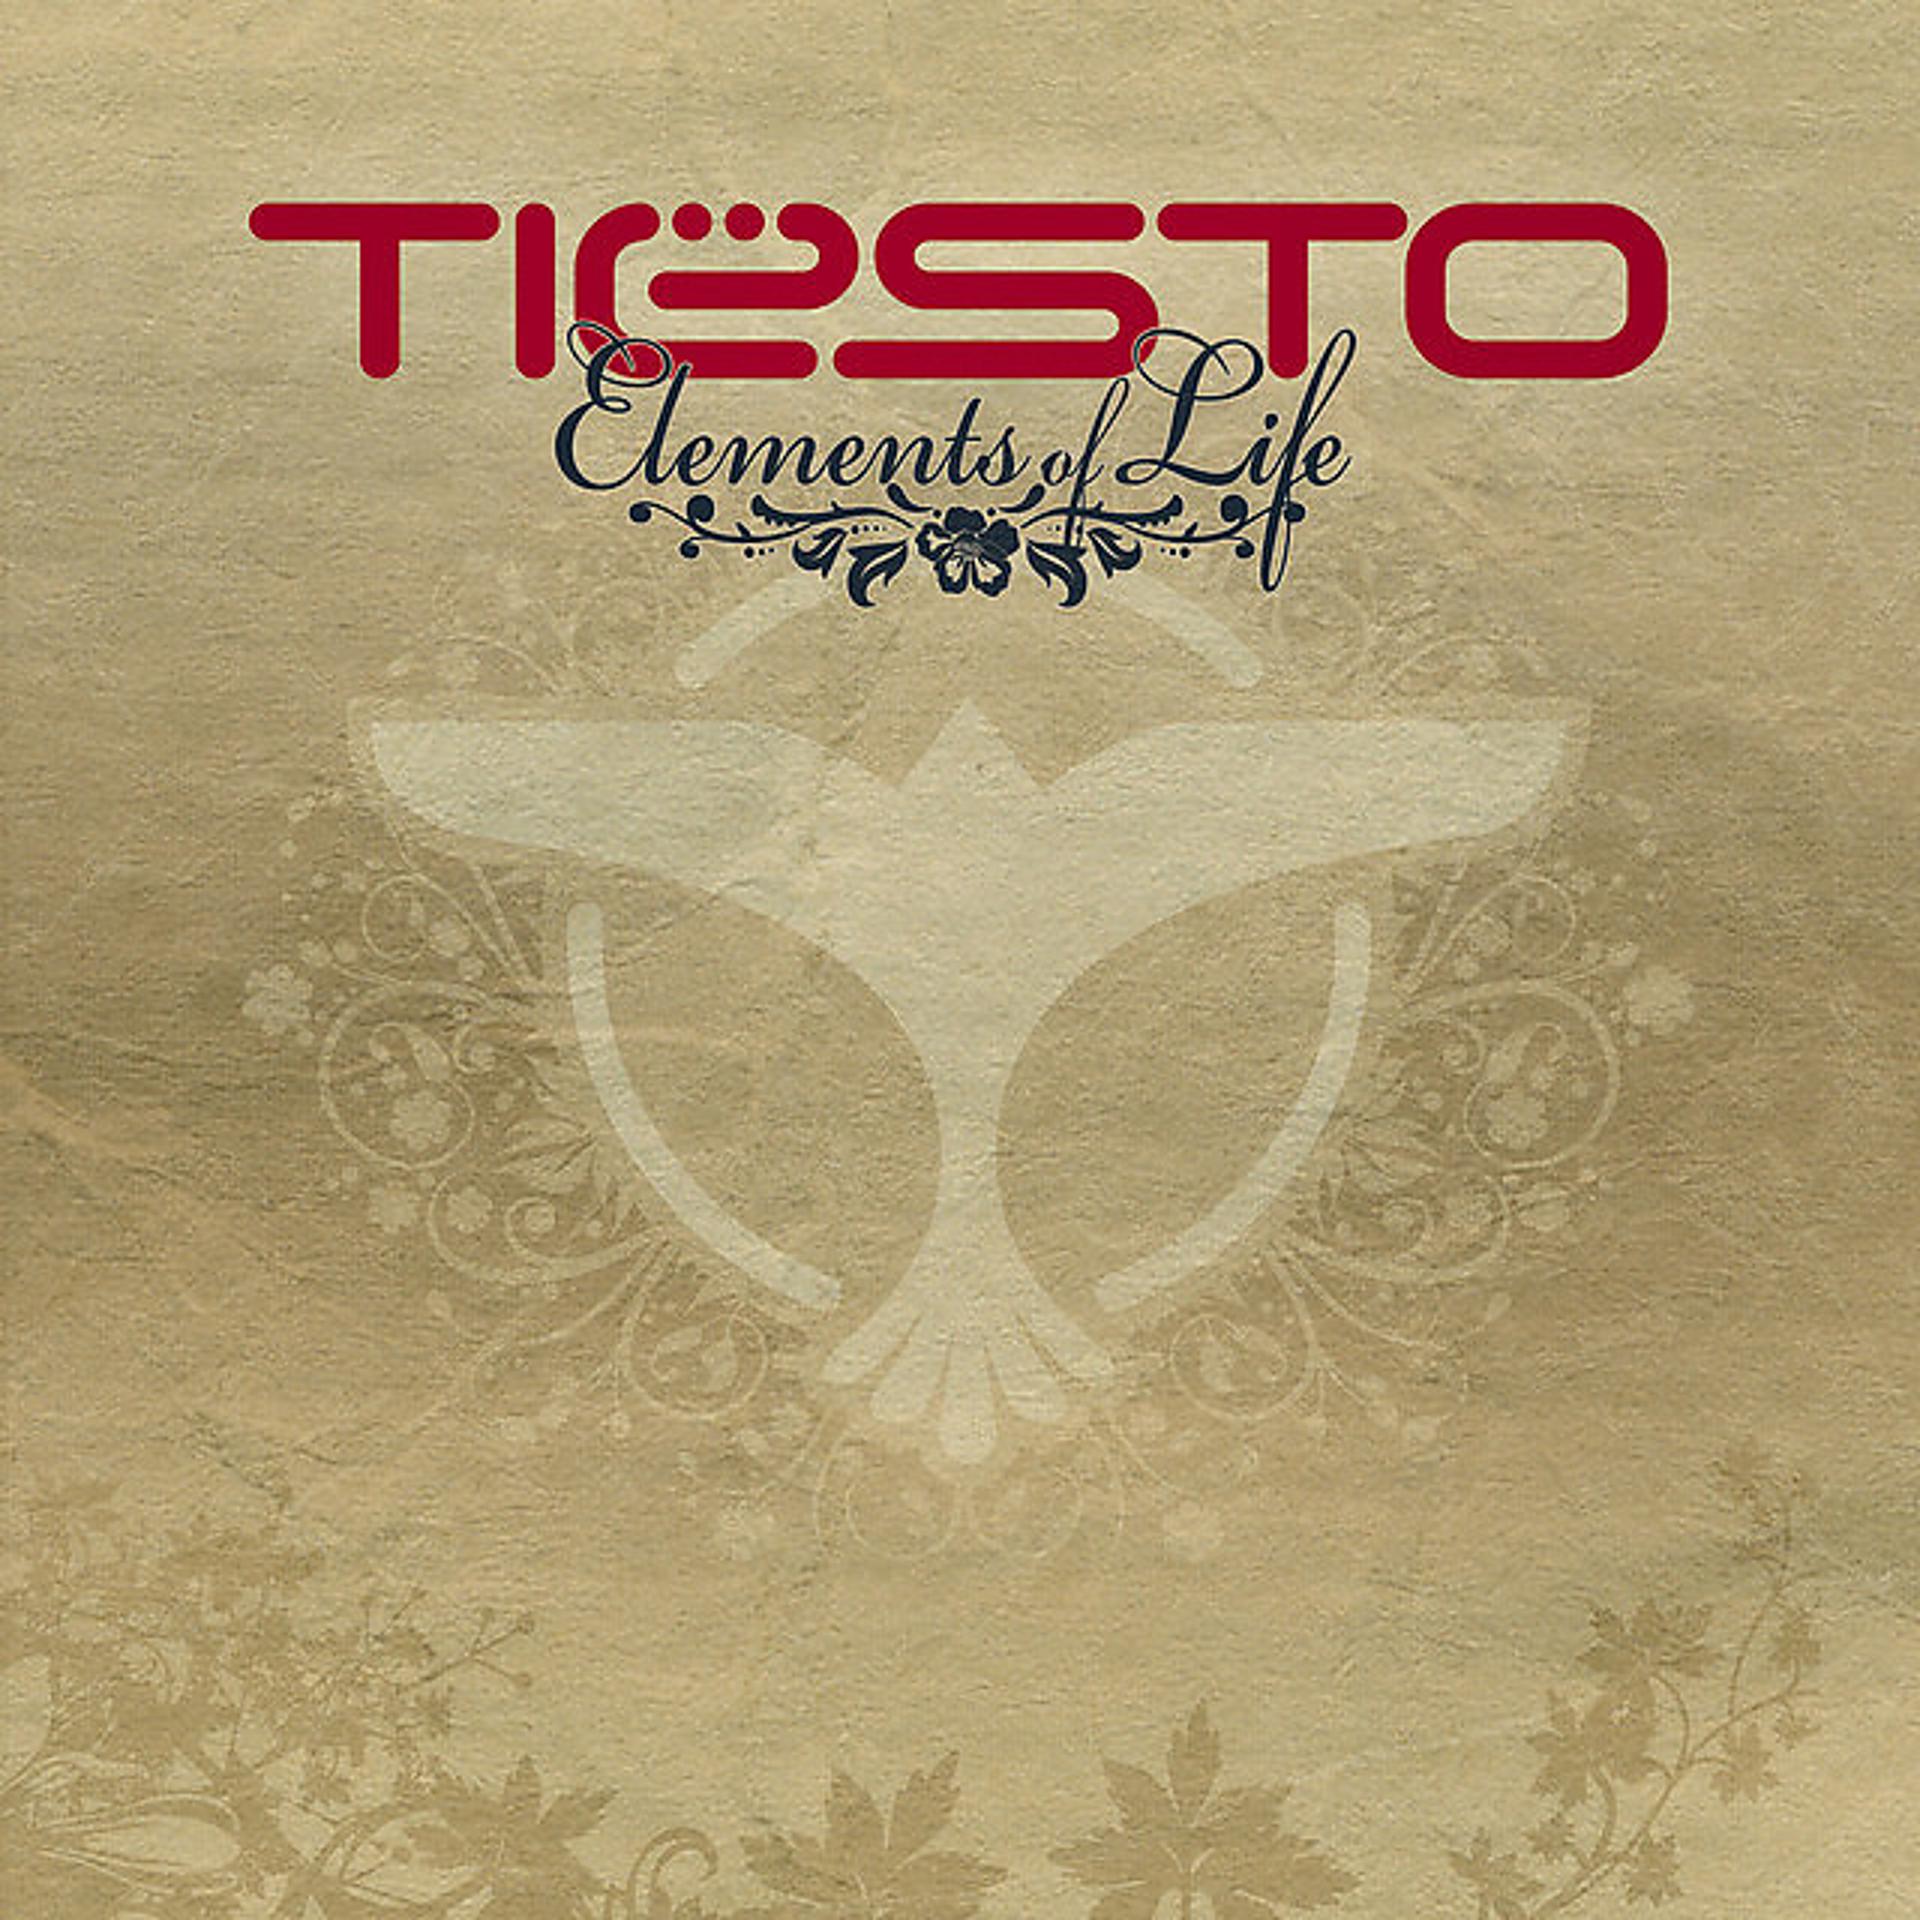 Elements of life. Tiesto альбом element. DJ Tiesto альбомы. DJ Tiesto elements of Life. Tiësto - elements of Life (2007).